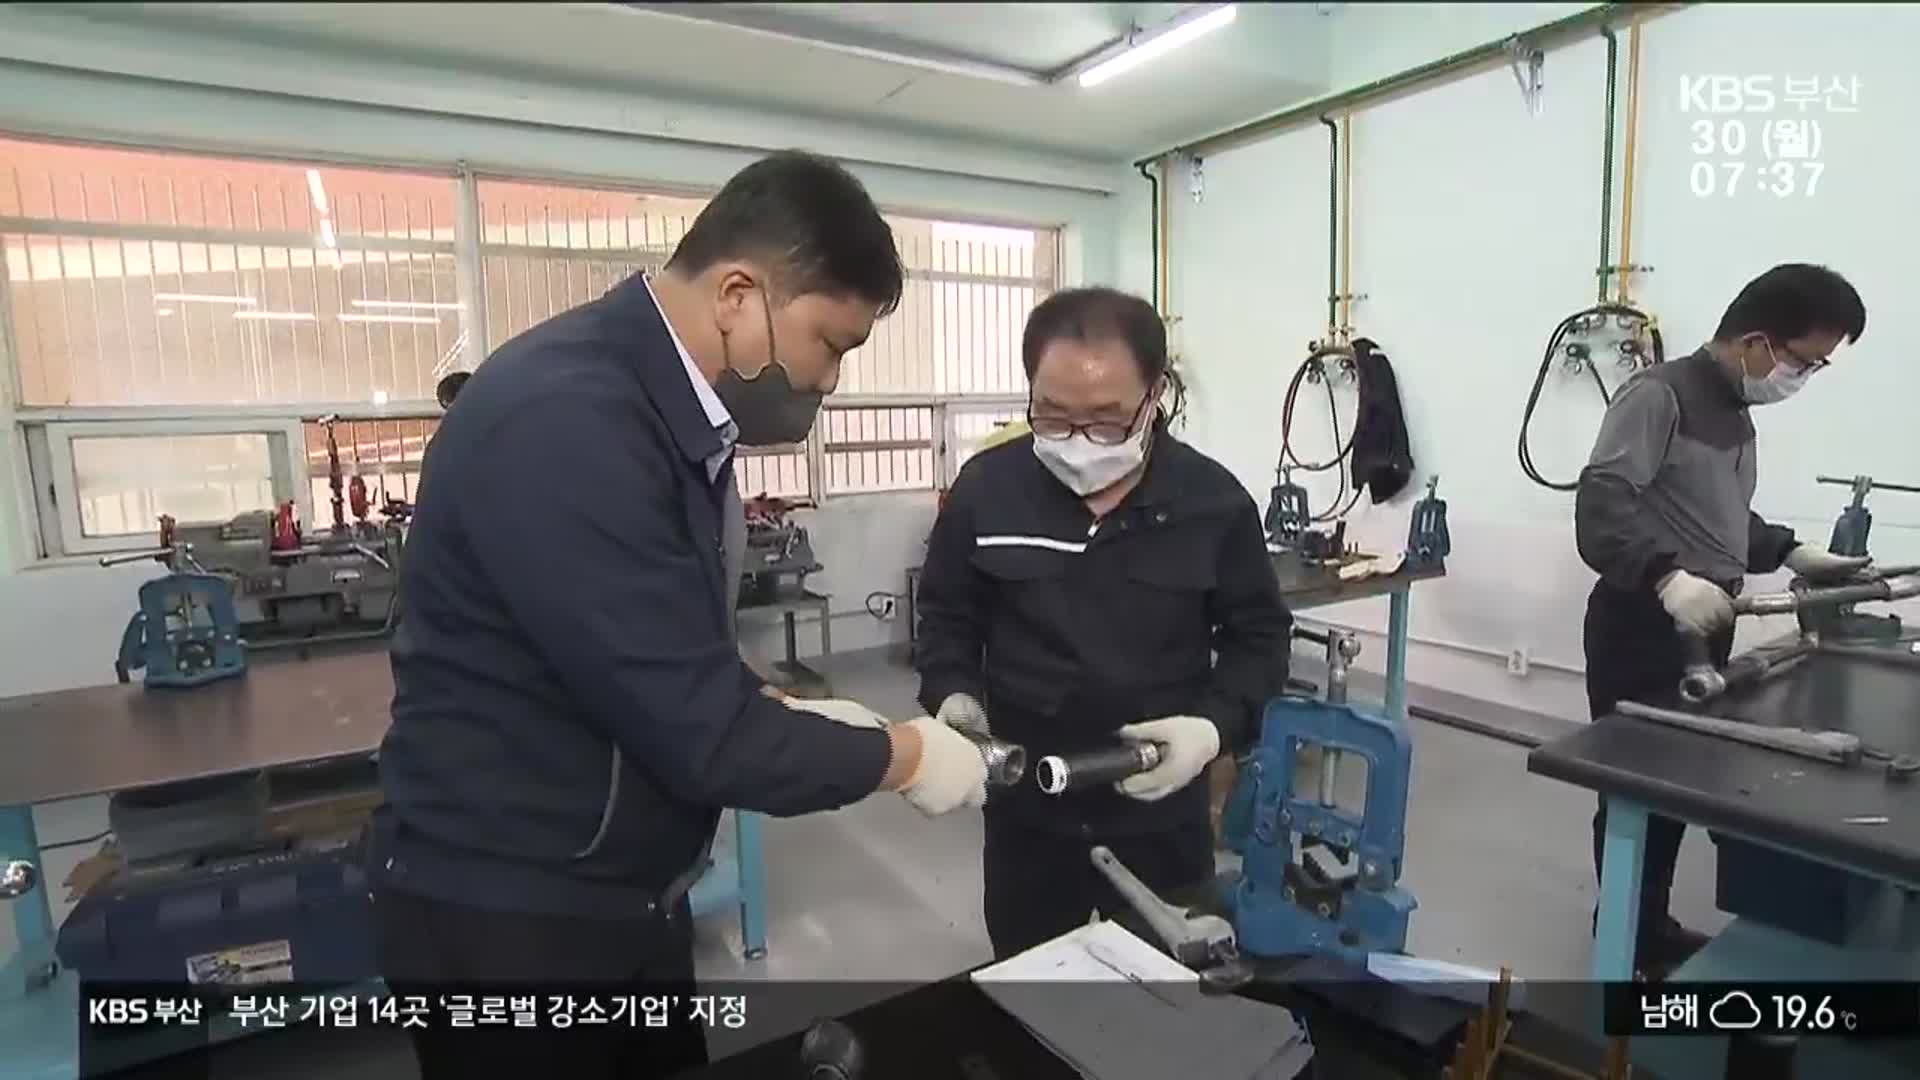 기능올림픽 휩쓴 명장들…대학서 후진 양성